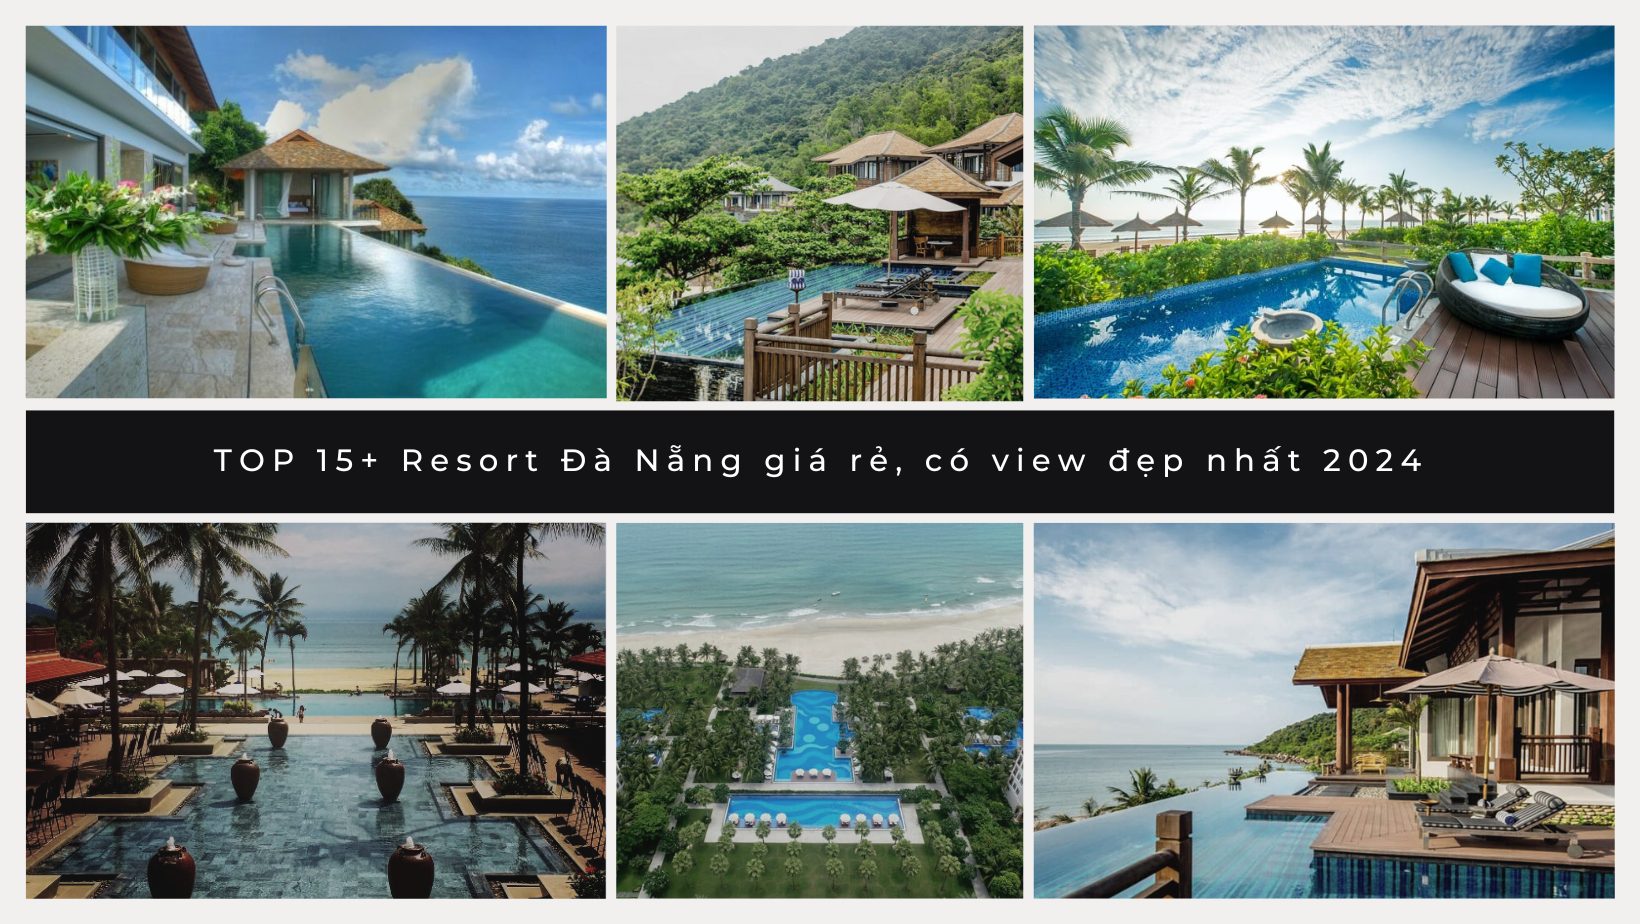 TOP 15+ Resort Đà Nẵng giá rẻ, có view đẹp nhất 2024